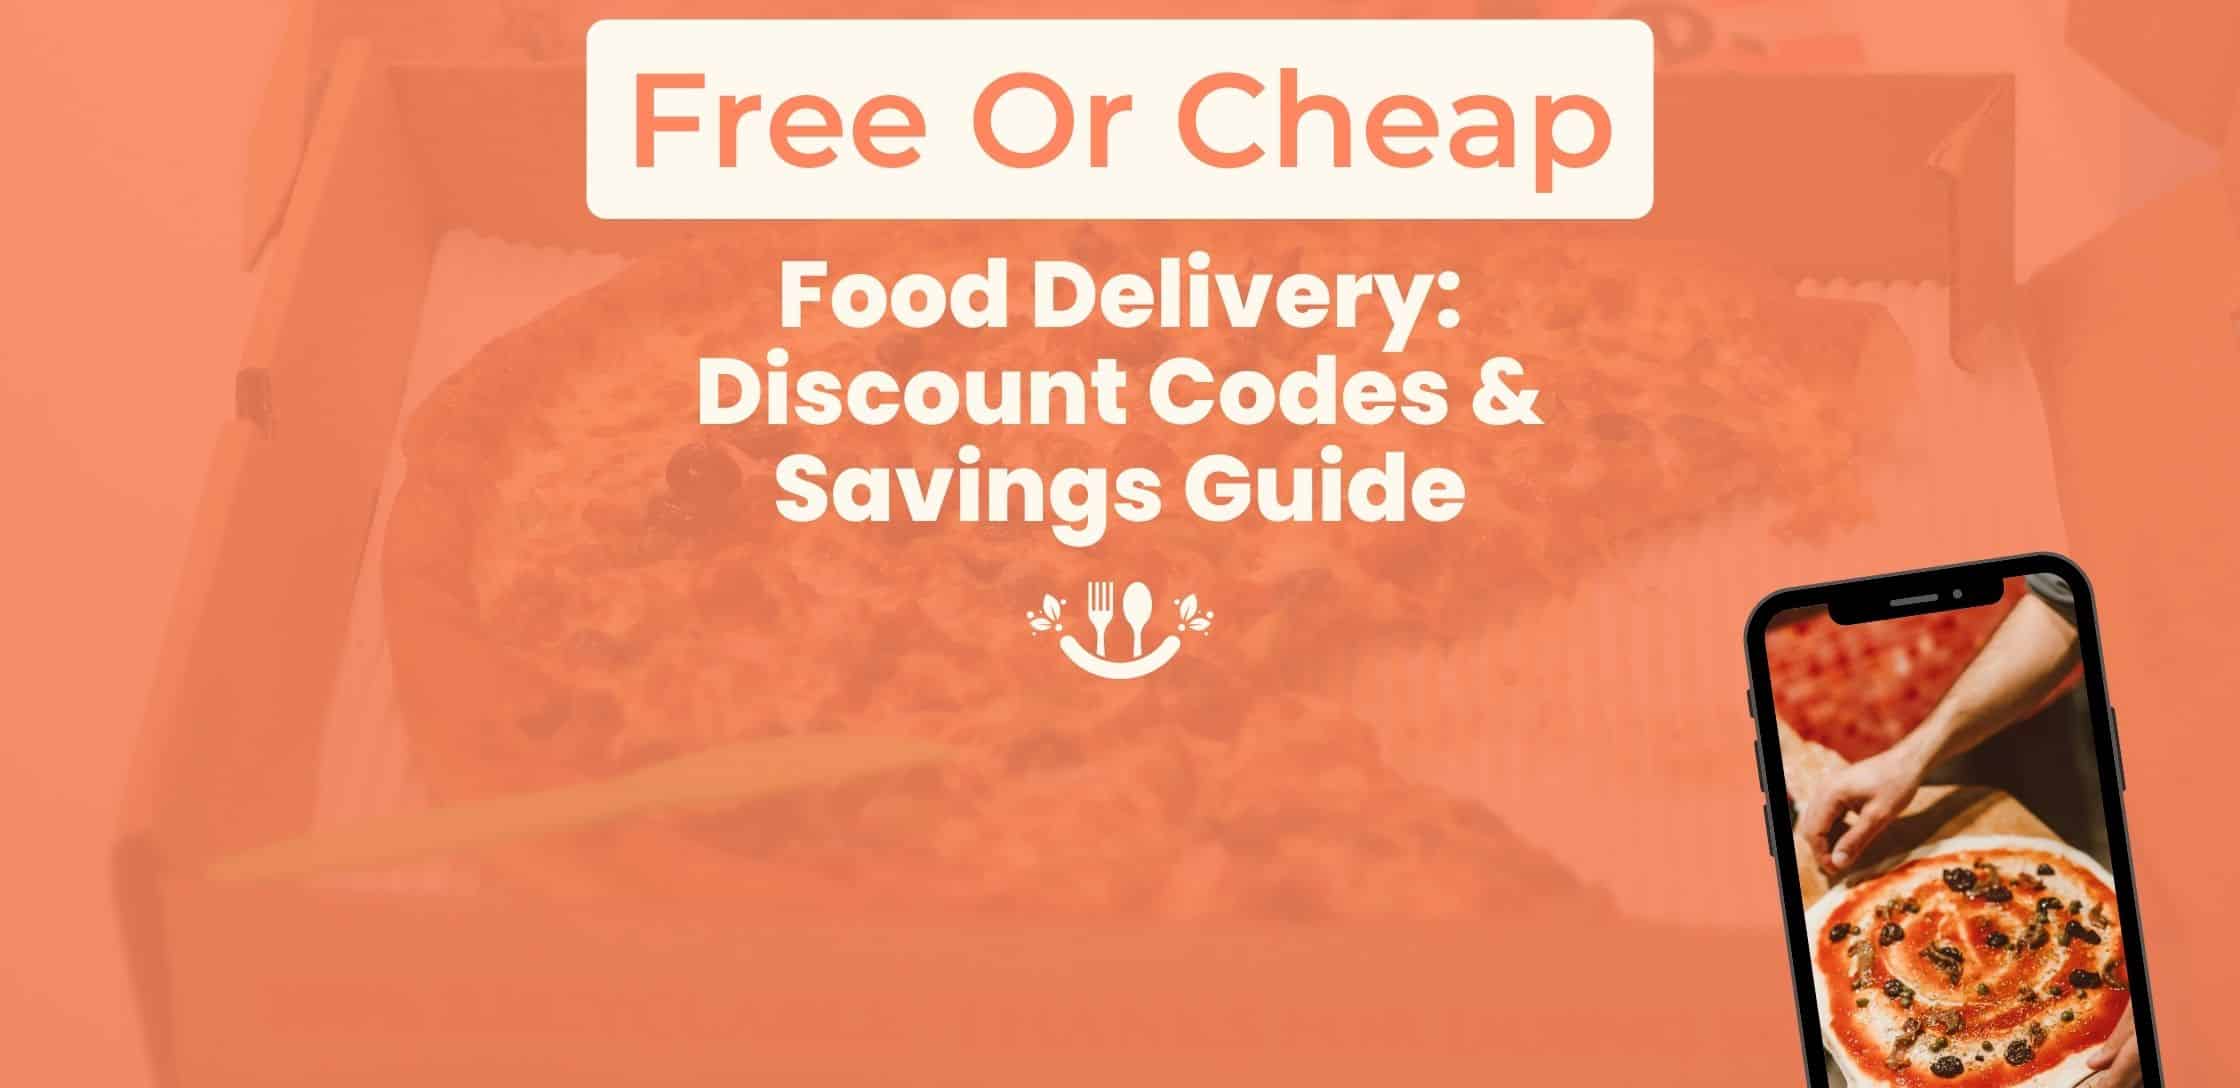 McDonald's Coupons & Offers: Flat 50% OFF + FREE Burger